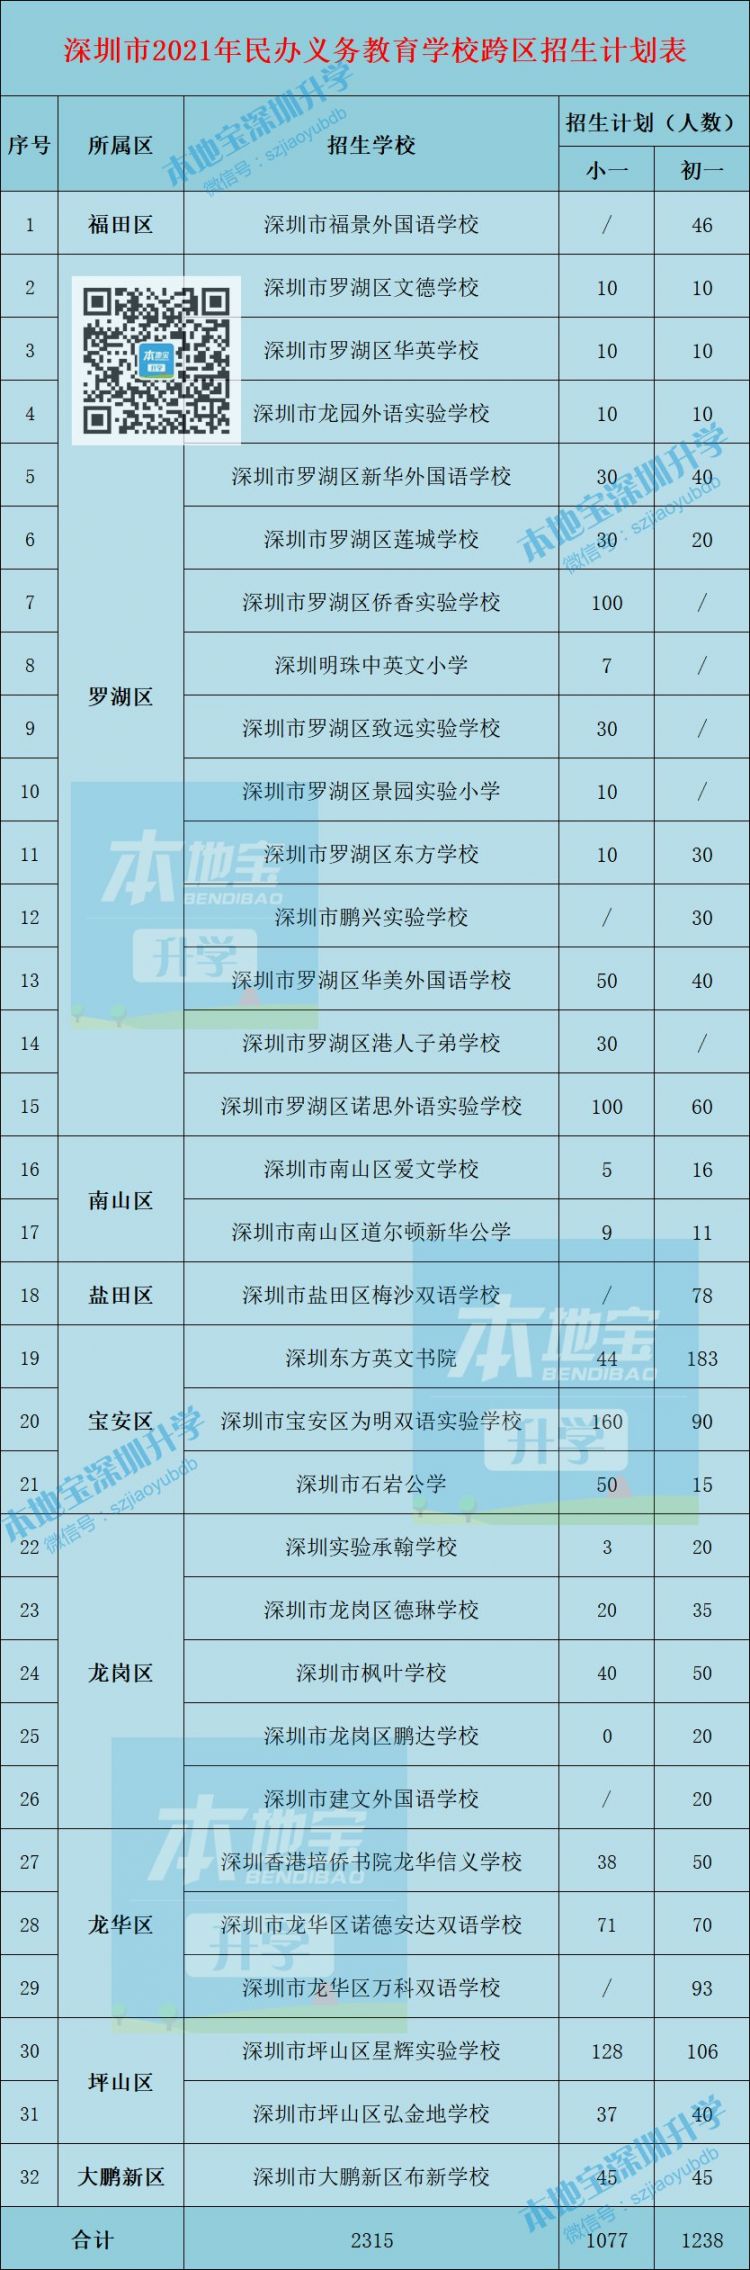 深圳32所民办学校获批跨区招生 共招收学生2315名